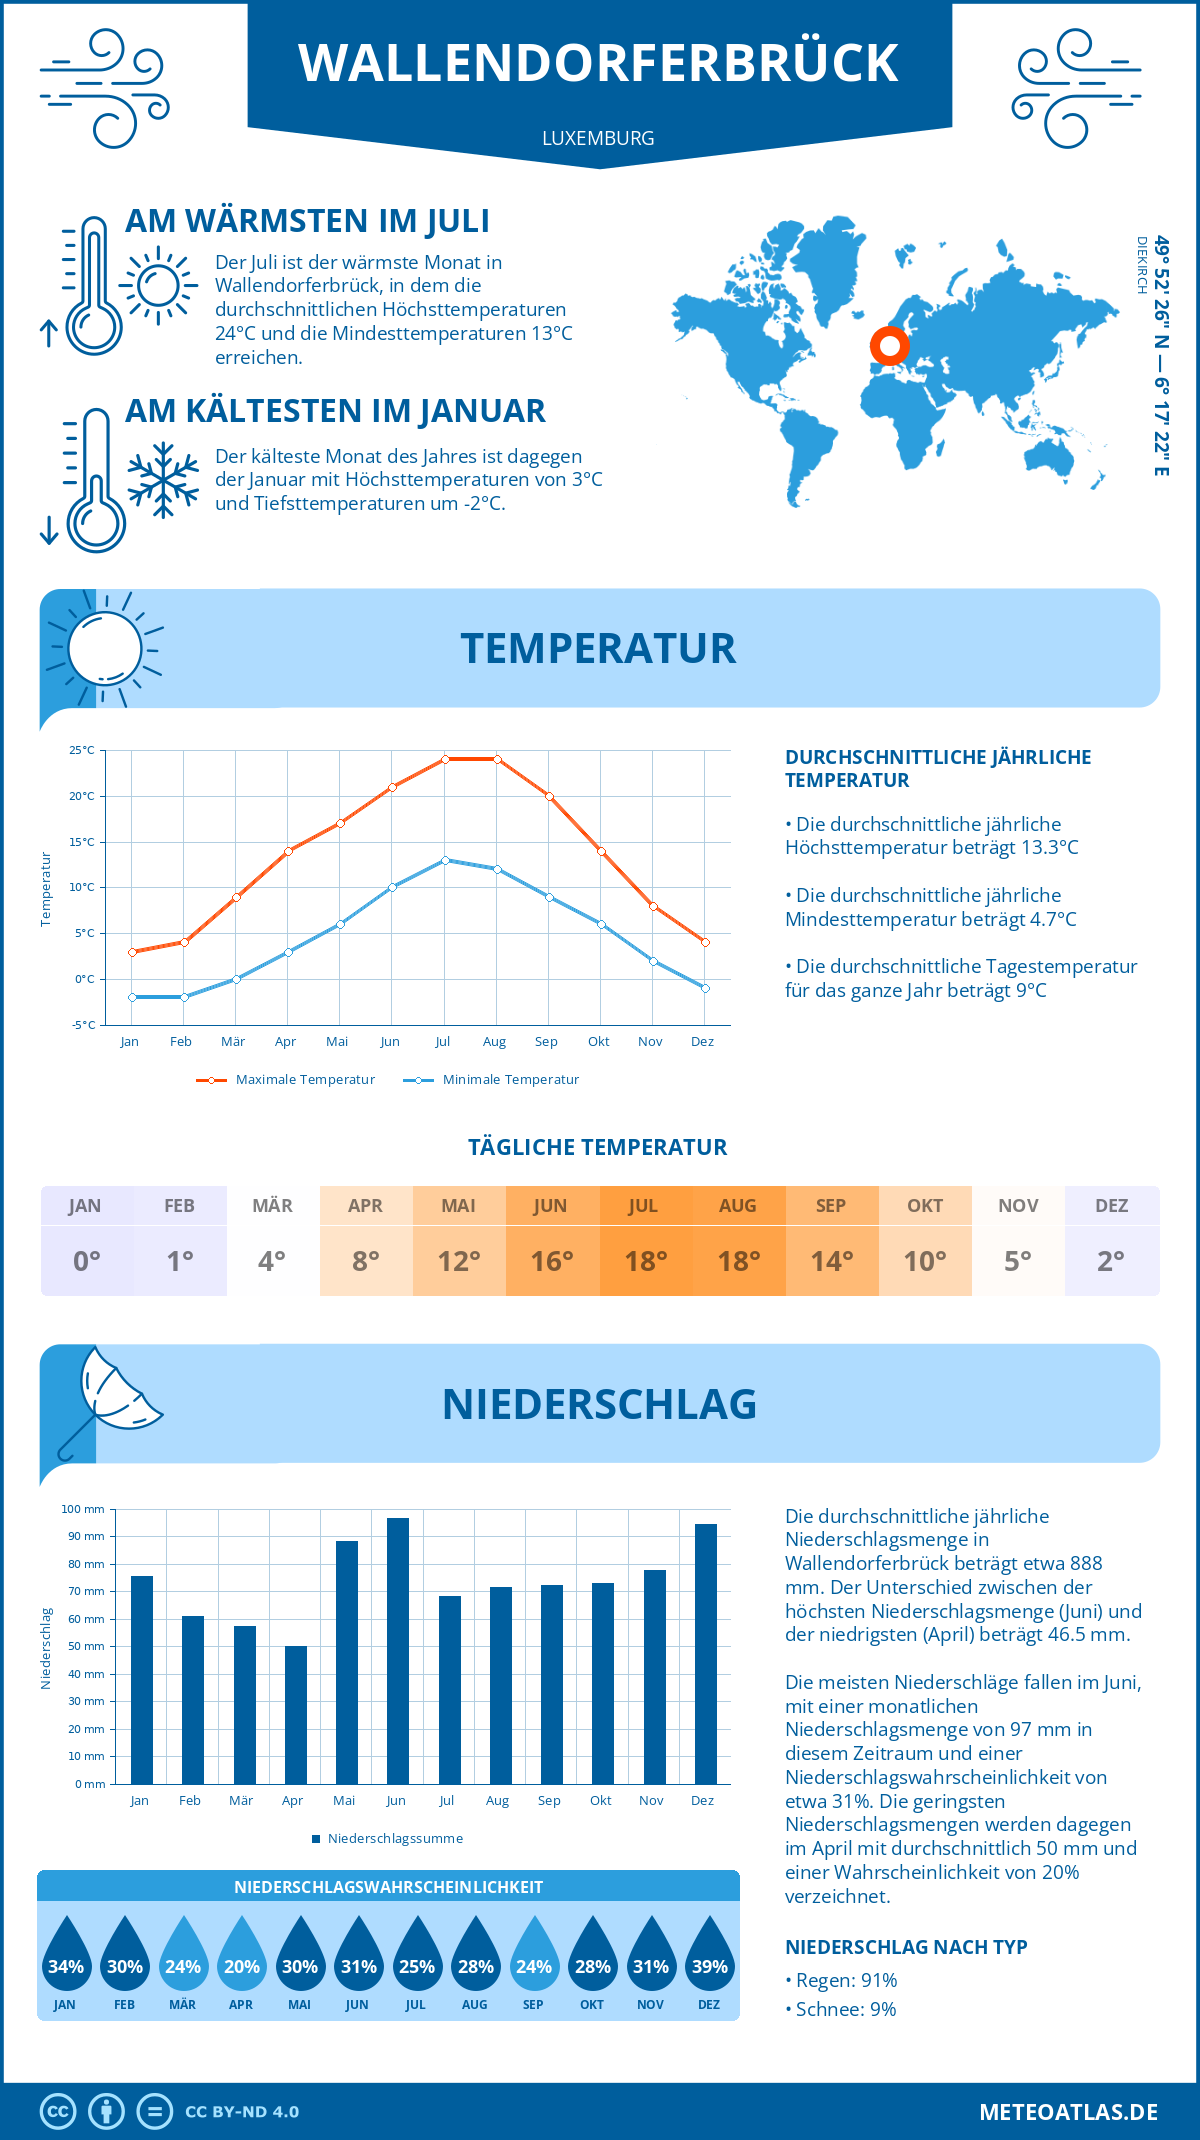 Wetter Wallendorferbrück (Luxemburg) - Temperatur und Niederschlag